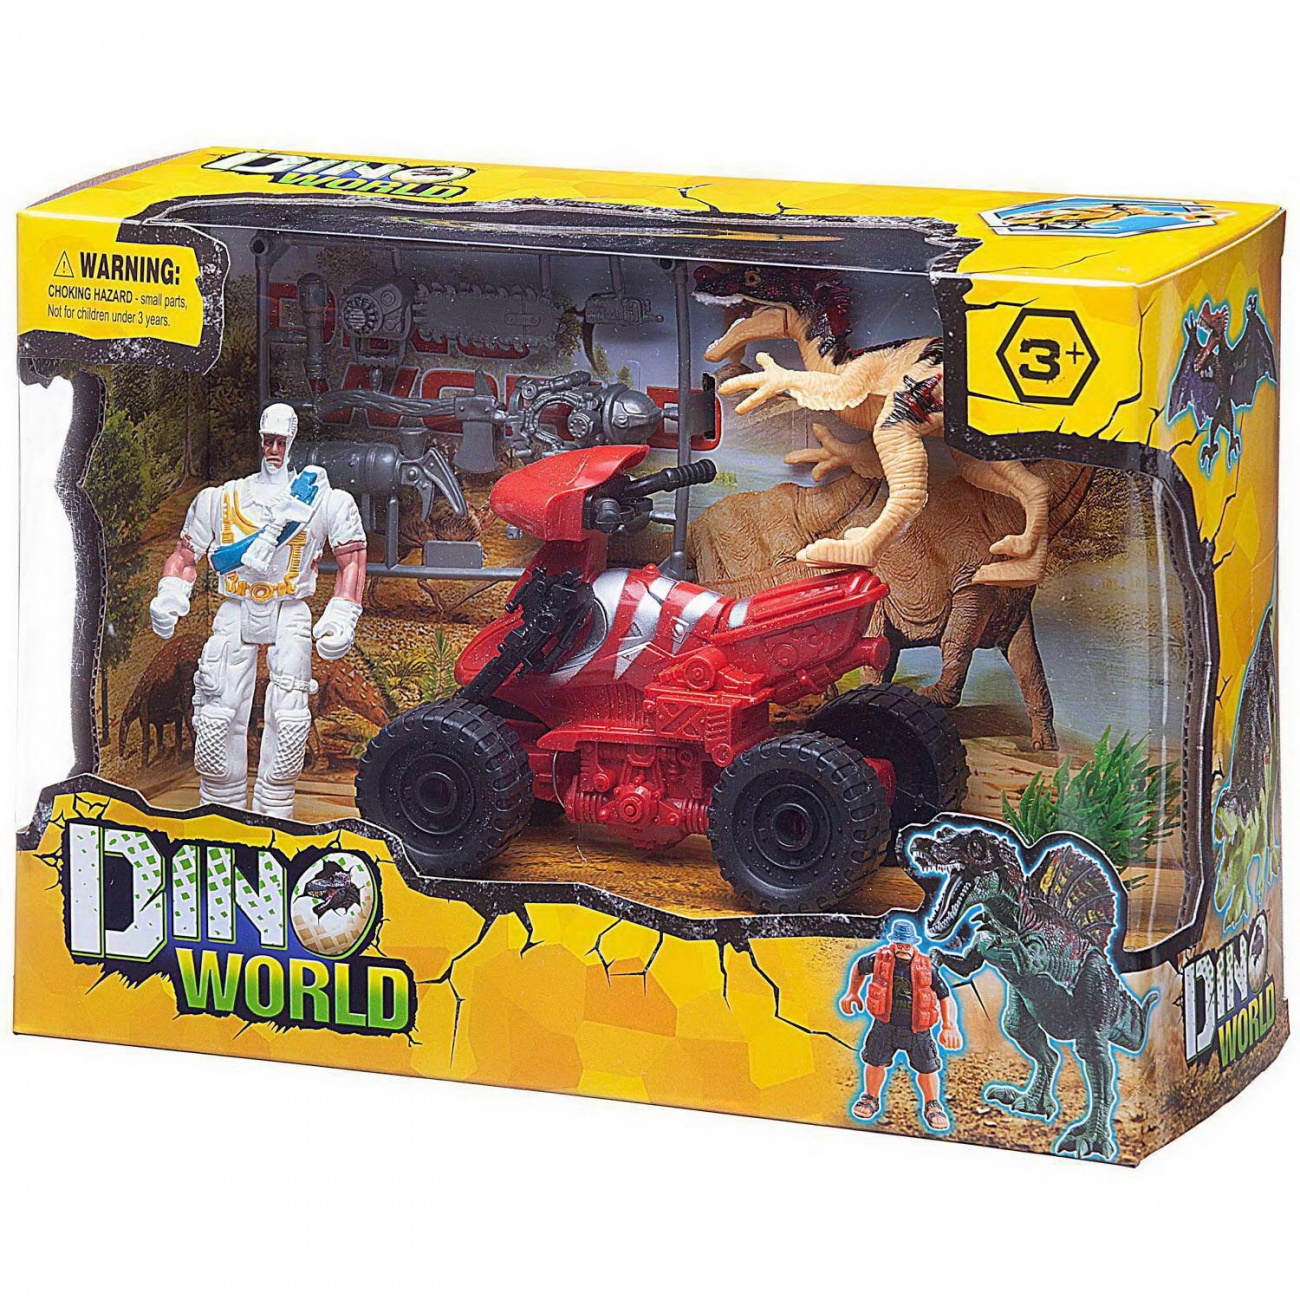 Игровой набор Junfa "Мир динозавров" (динозавр, квадроцикл, фигурка человека, аксесс.) WA-14248